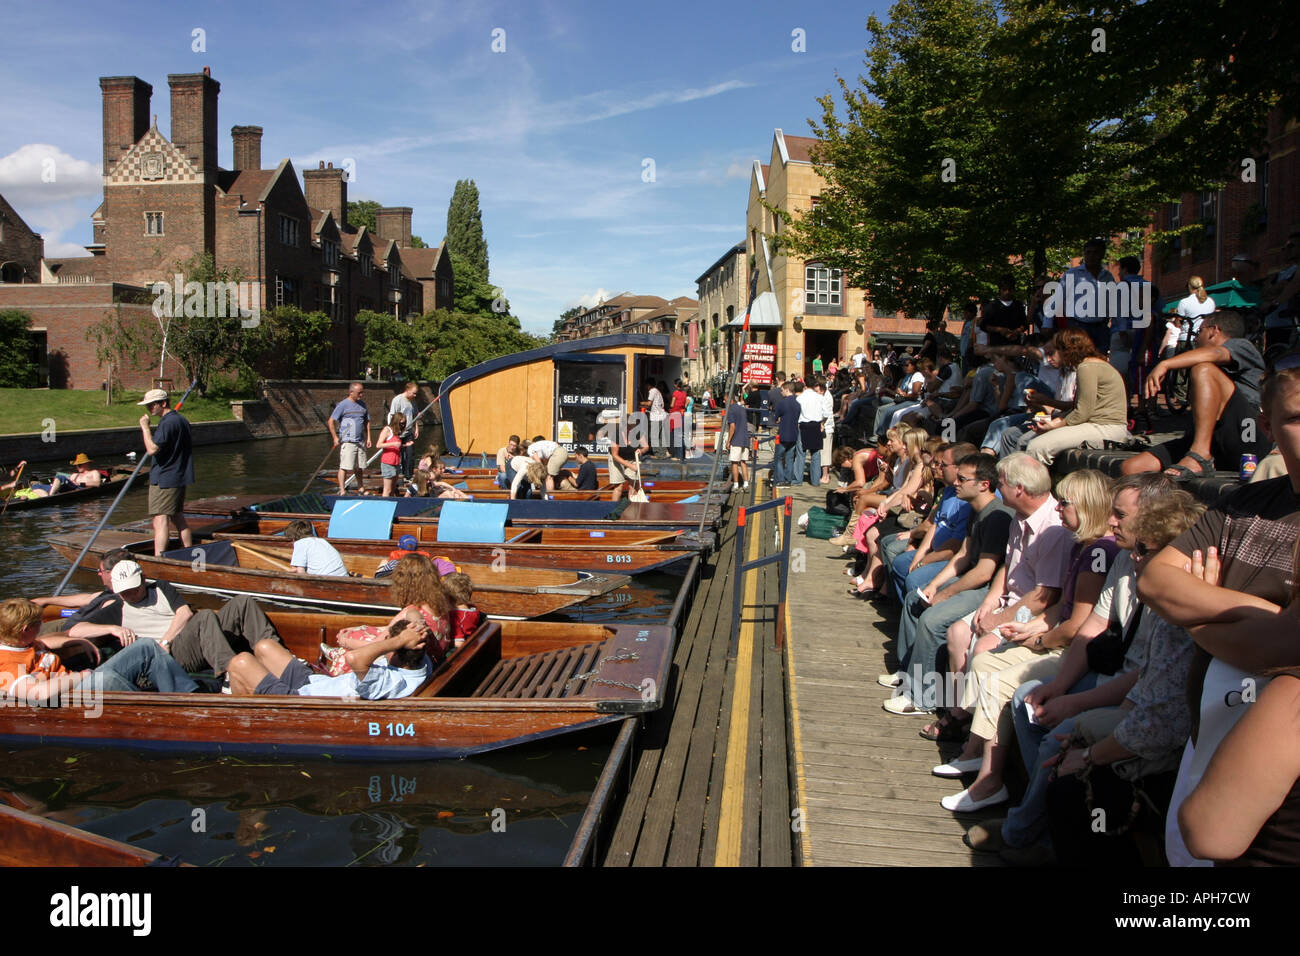 Menschen-Warteschlange einen Punt, Magdalena Bridge, Cambridge, England zu mieten Stockfoto